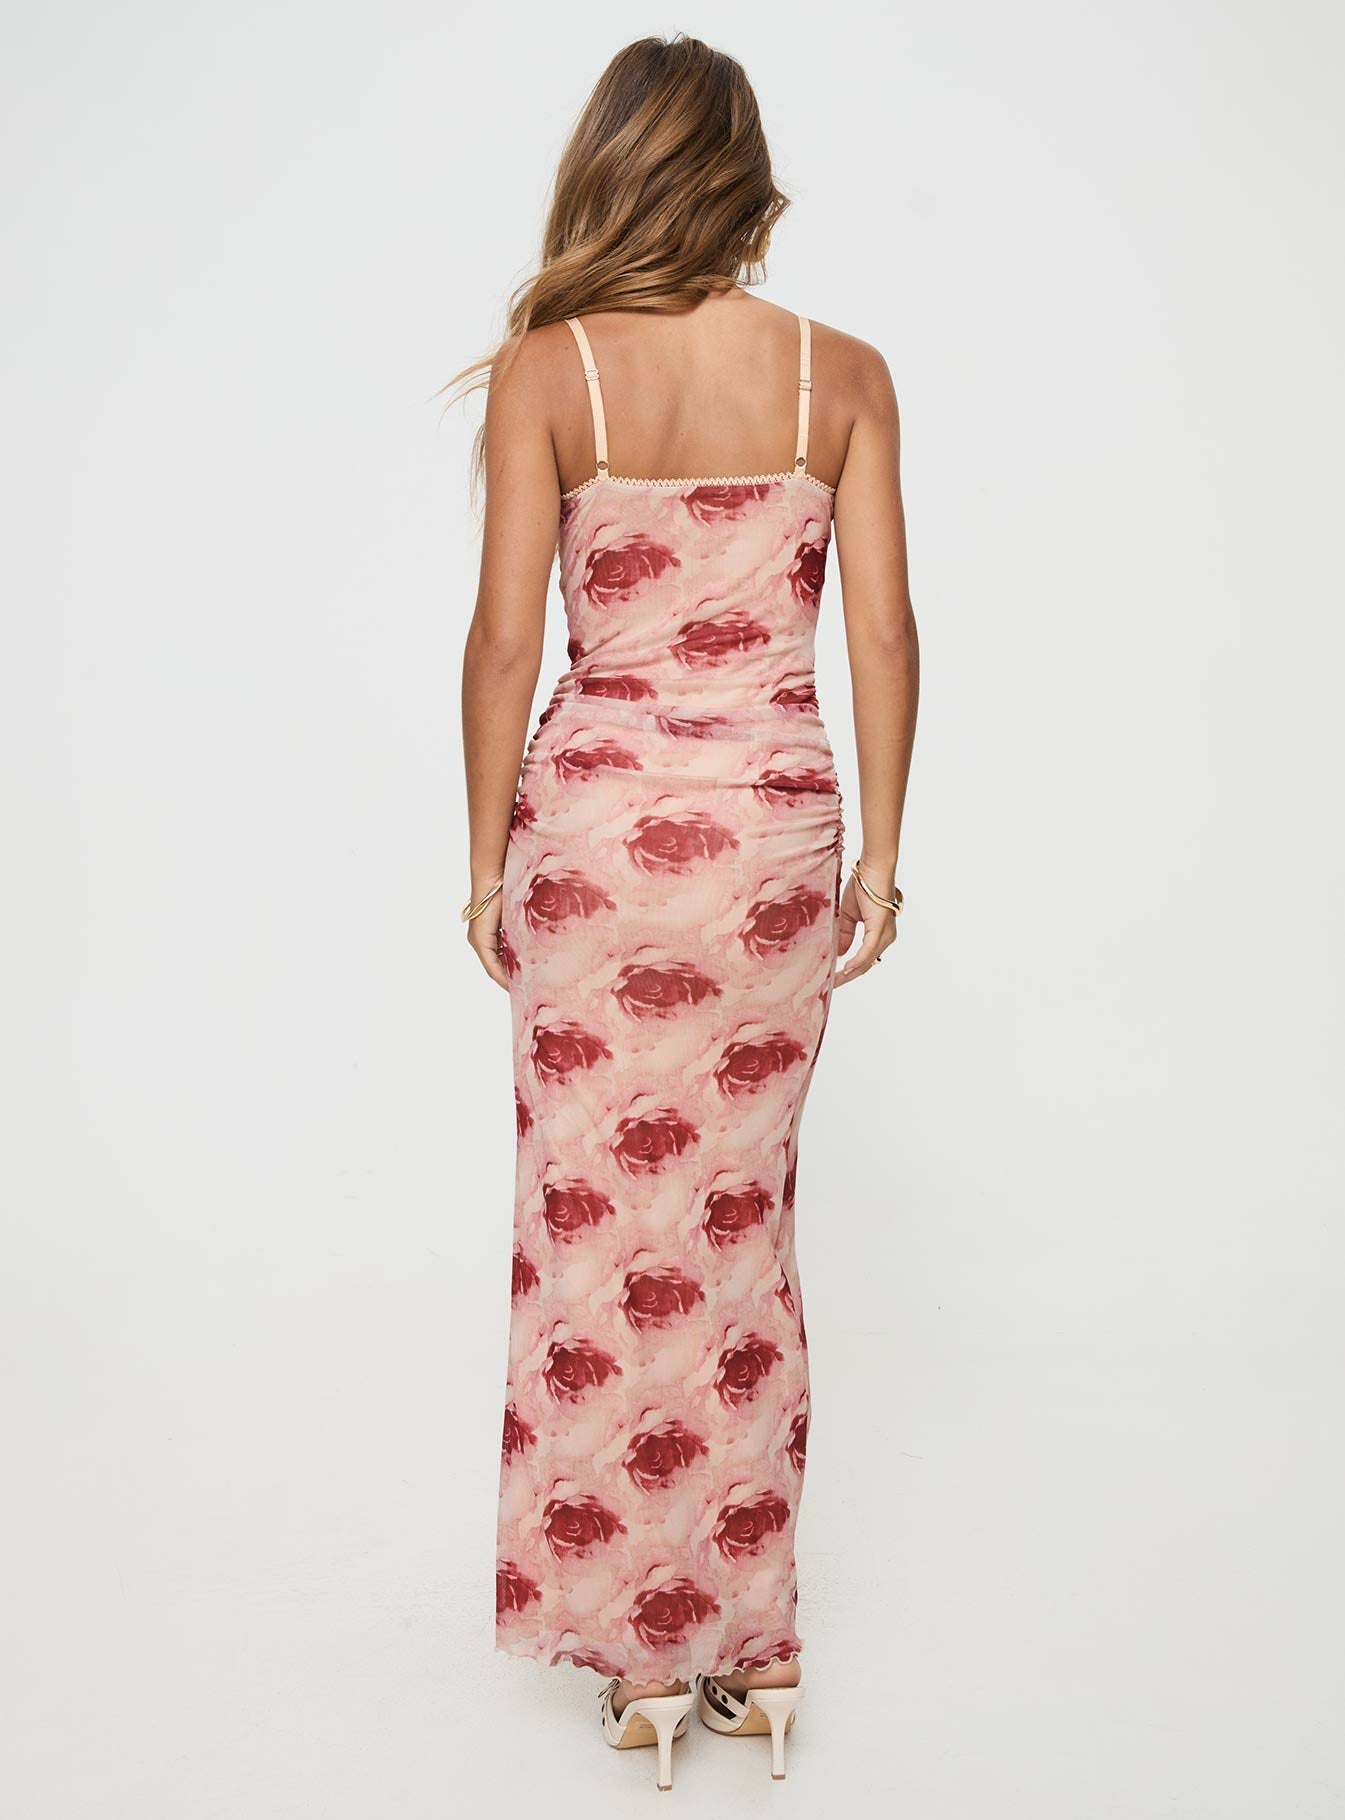 Shop Formal Dress - Louette Maxi Dress Floral secondary image